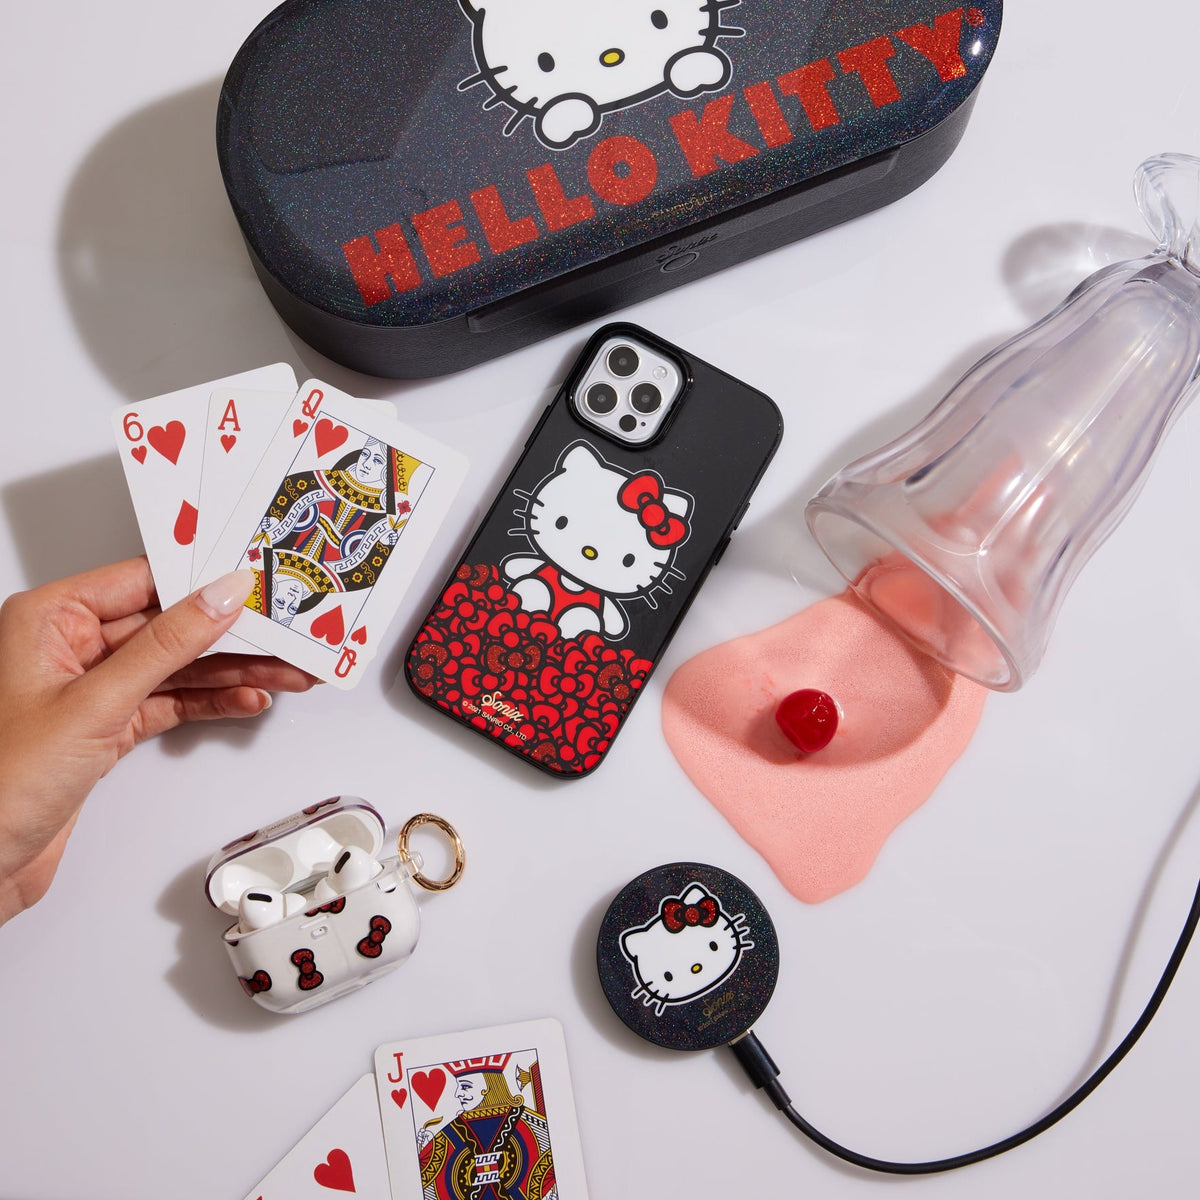 Hello Kitty x Sonix AirPods Case (Gen 2/ Gen 3/ Pro)